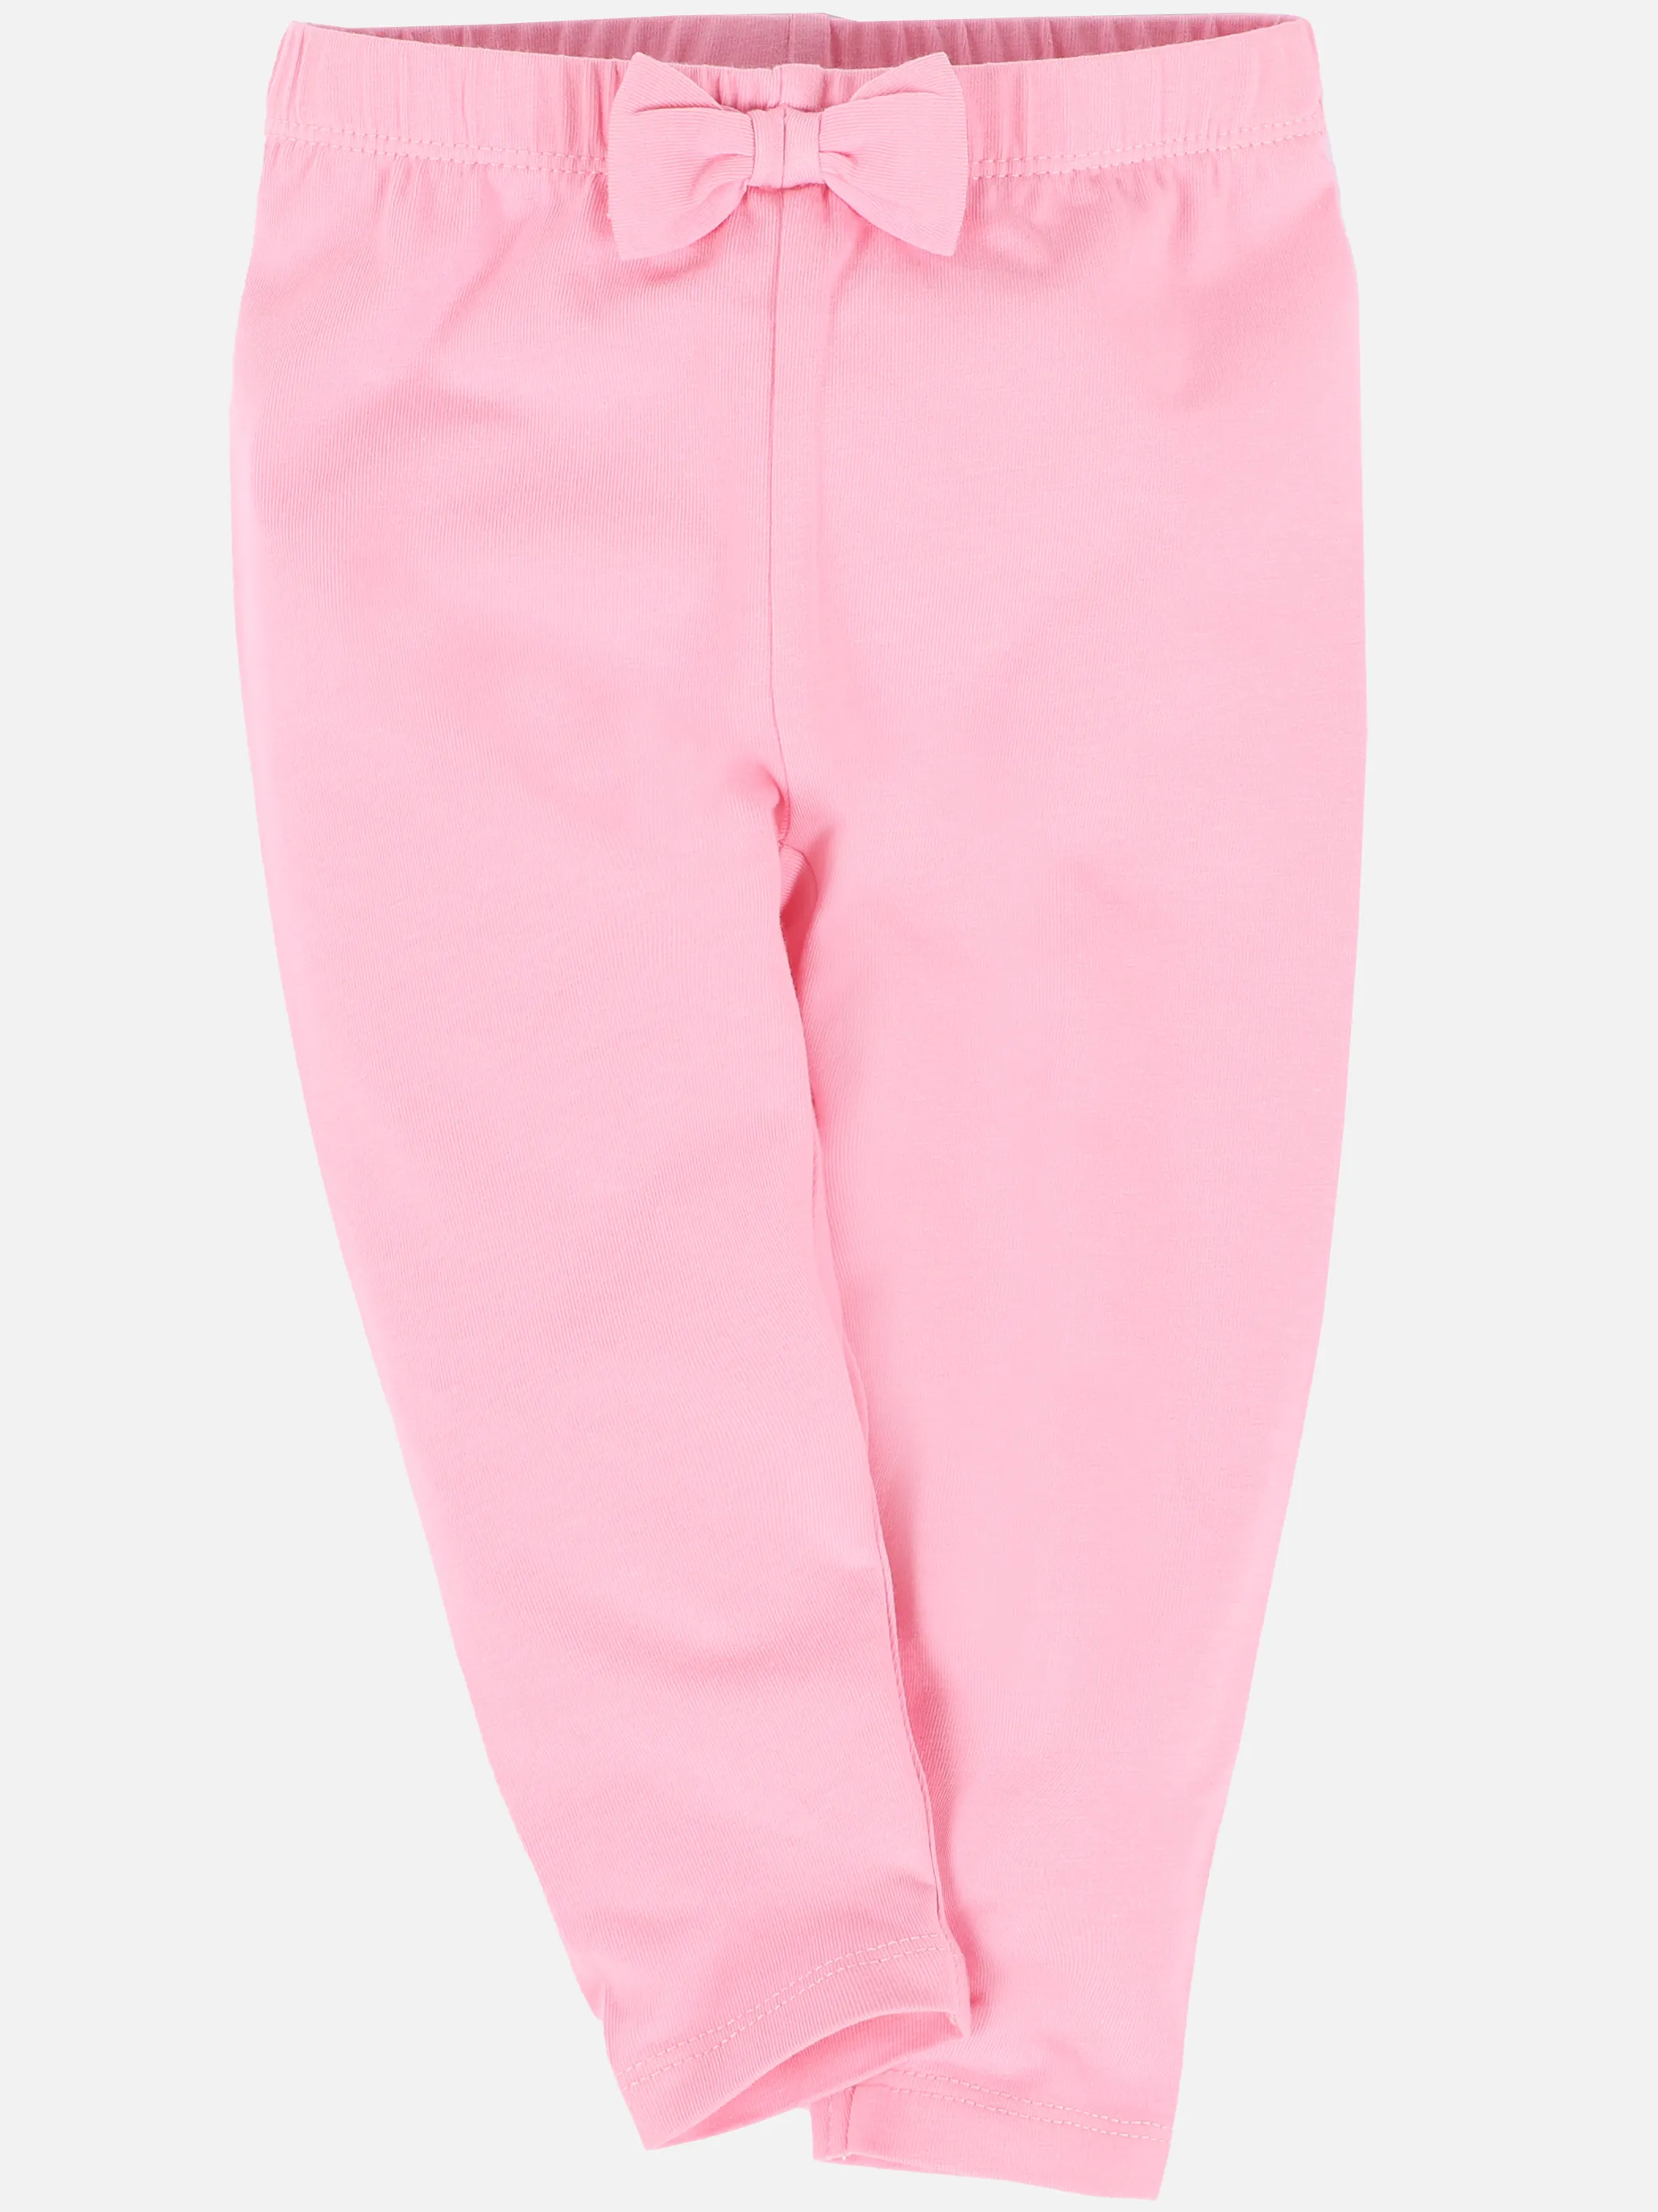 Bubble Gum BM 2er Pack Leggings in pink und weiß Weiß 890430 WEIß/PINK 3